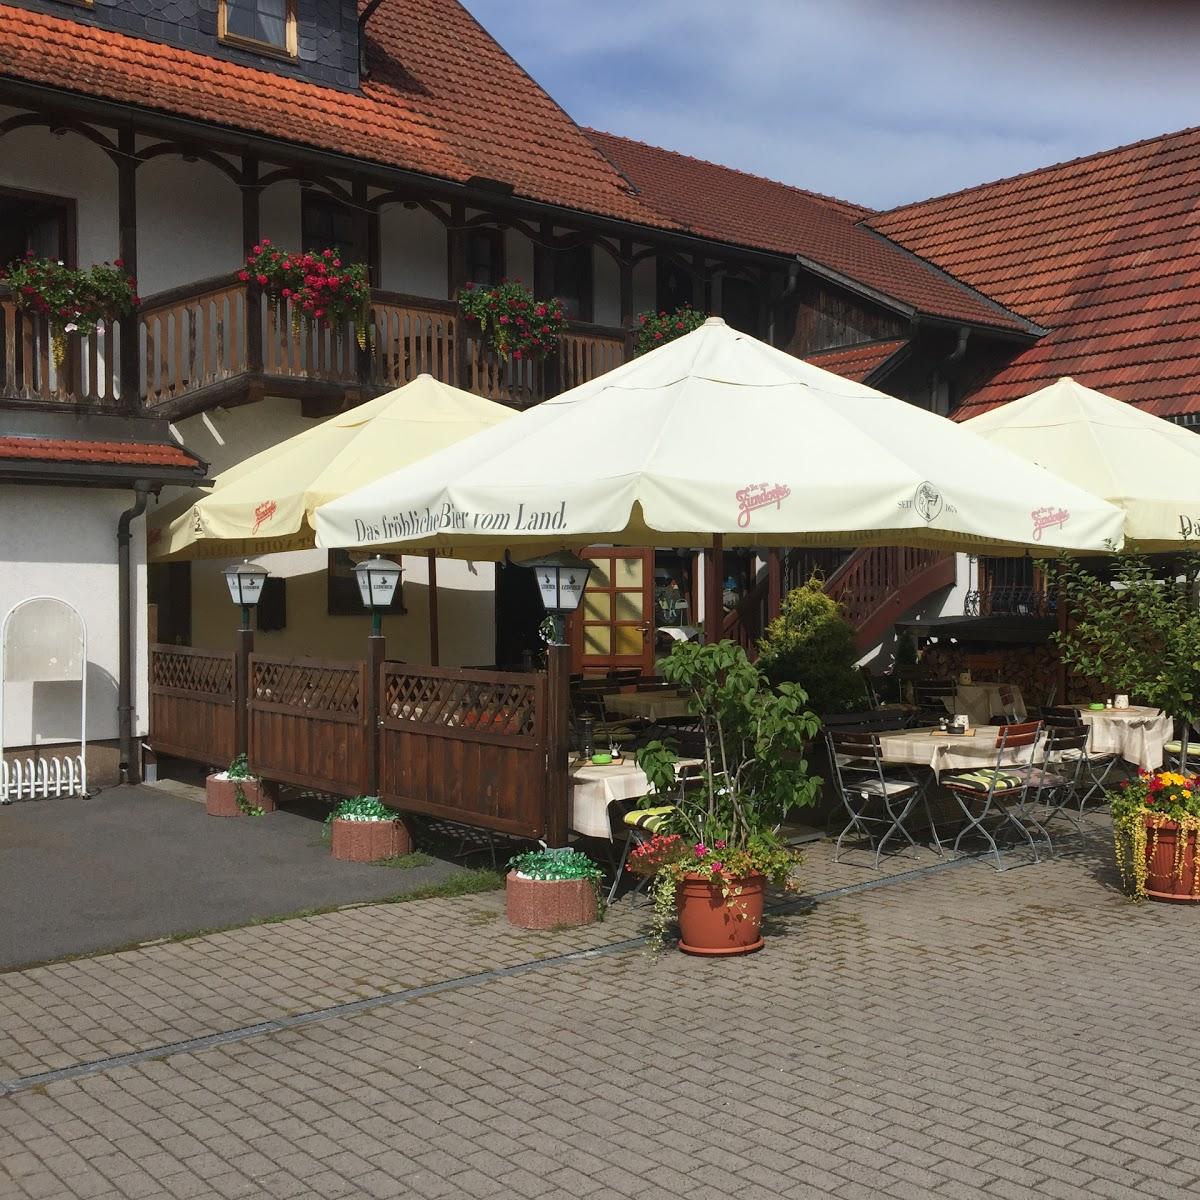 Restaurant "Schützenhof XXL" in Auengrund